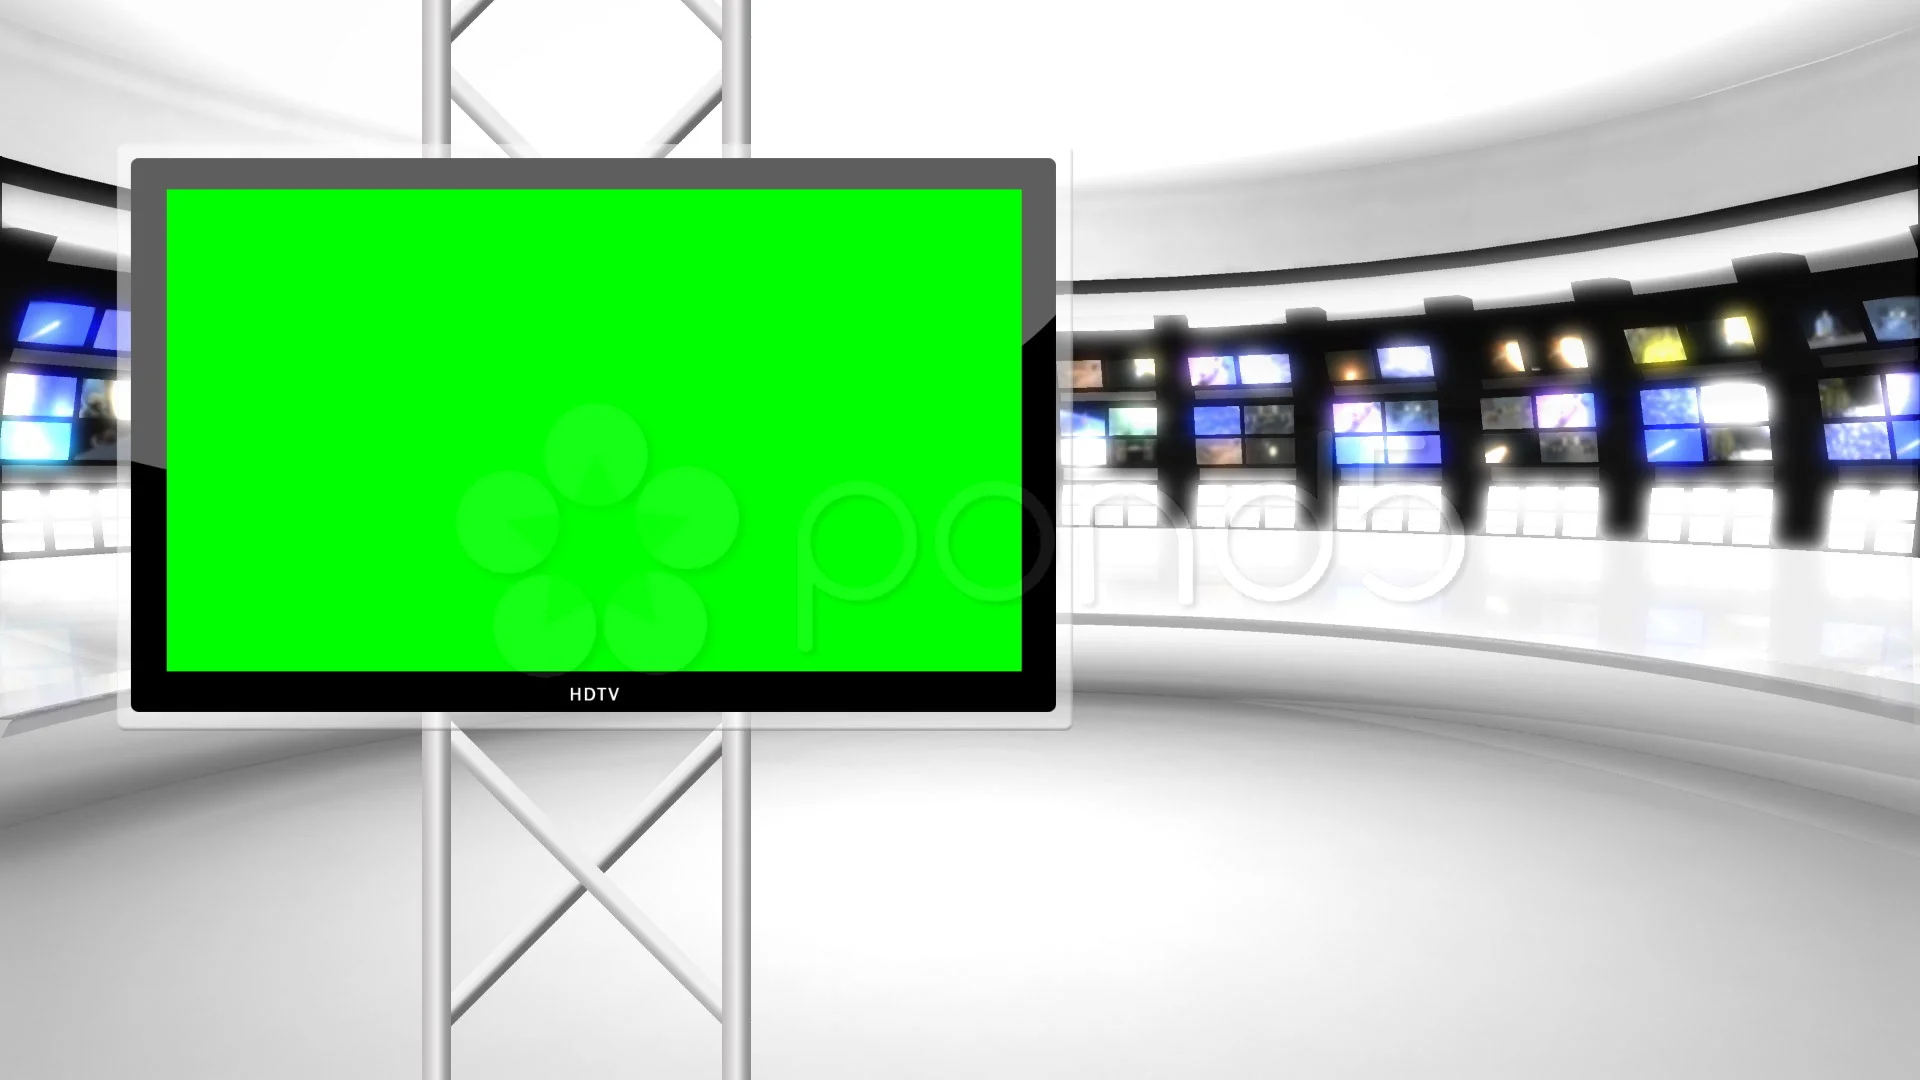 Phòng thu ảo với màn hình xanh sẽ giúp bạn tạo ra những bản tin tin tức chuyên nghiệp và hiệu quả. Với phòng thu ảo, bạn sẽ có rất nhiều lựa chọn về nền tảng thể hiện thông tin cho bản tin của mình. Hãy xem ảnh để có một cái nhìn sâu hơn về phòng thu ảo với màn hình xanh cho tin tức.